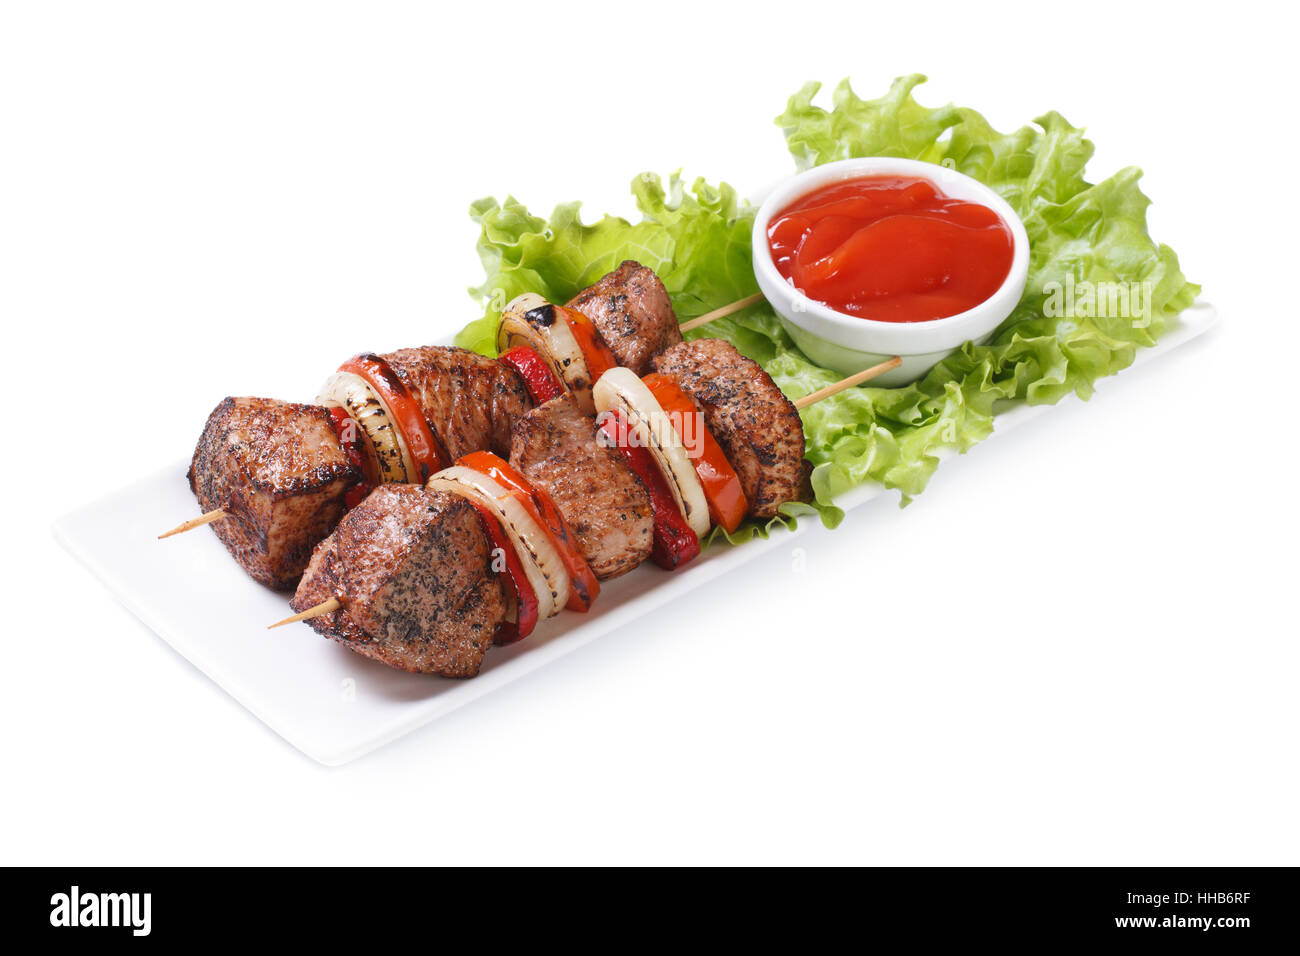 Shish kebab de porc aux légumes et sauce sur une assiette blanche isolée Banque D'Images